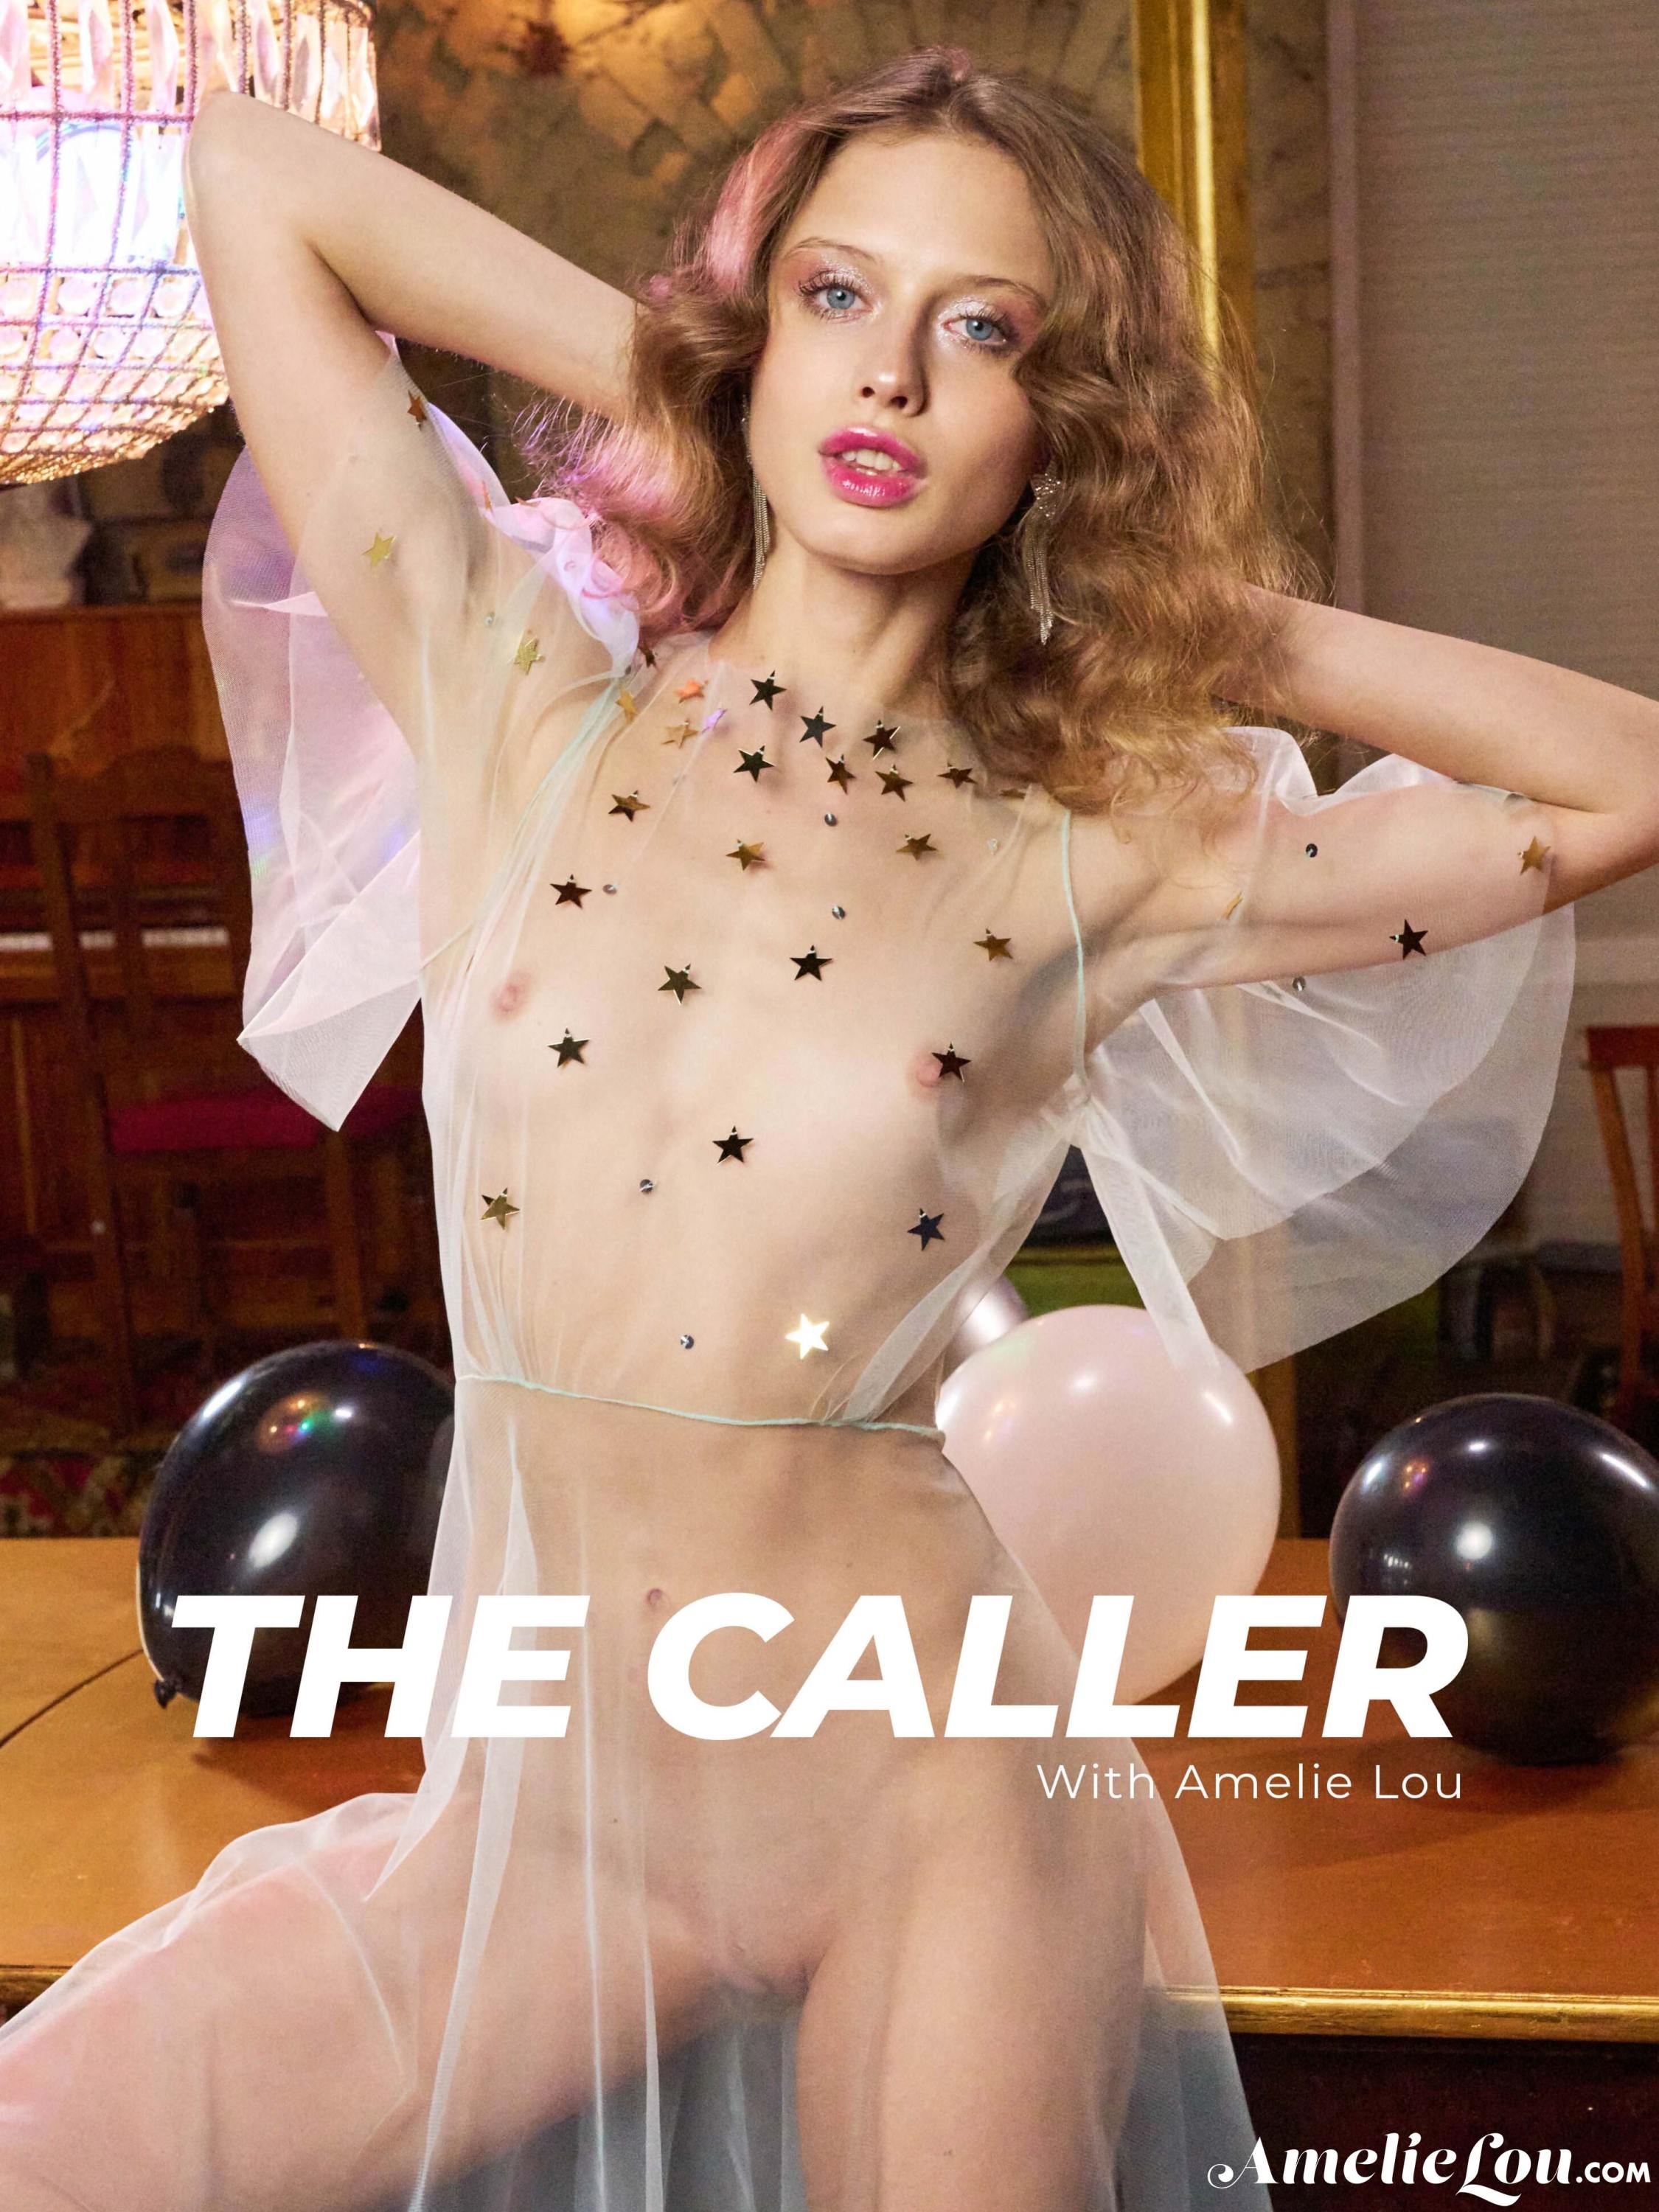 【網搜大尺度系列】Amelie Lou The Caller【91P】 - 貼圖 - 歐美寫真 -